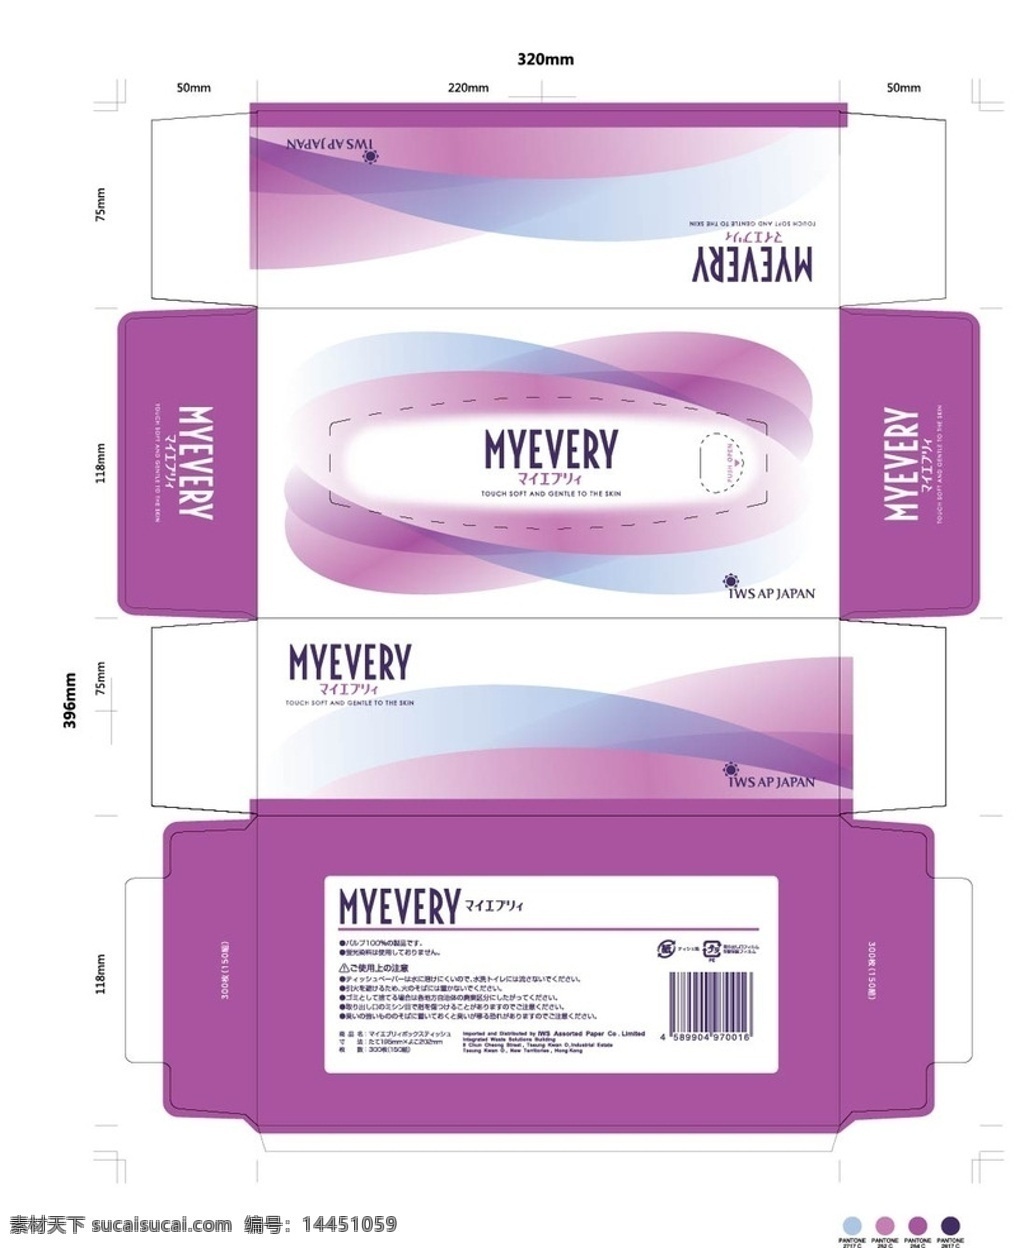 纸巾包装 紫色 彩盒 纸巾 包装设计 高档包装 包装